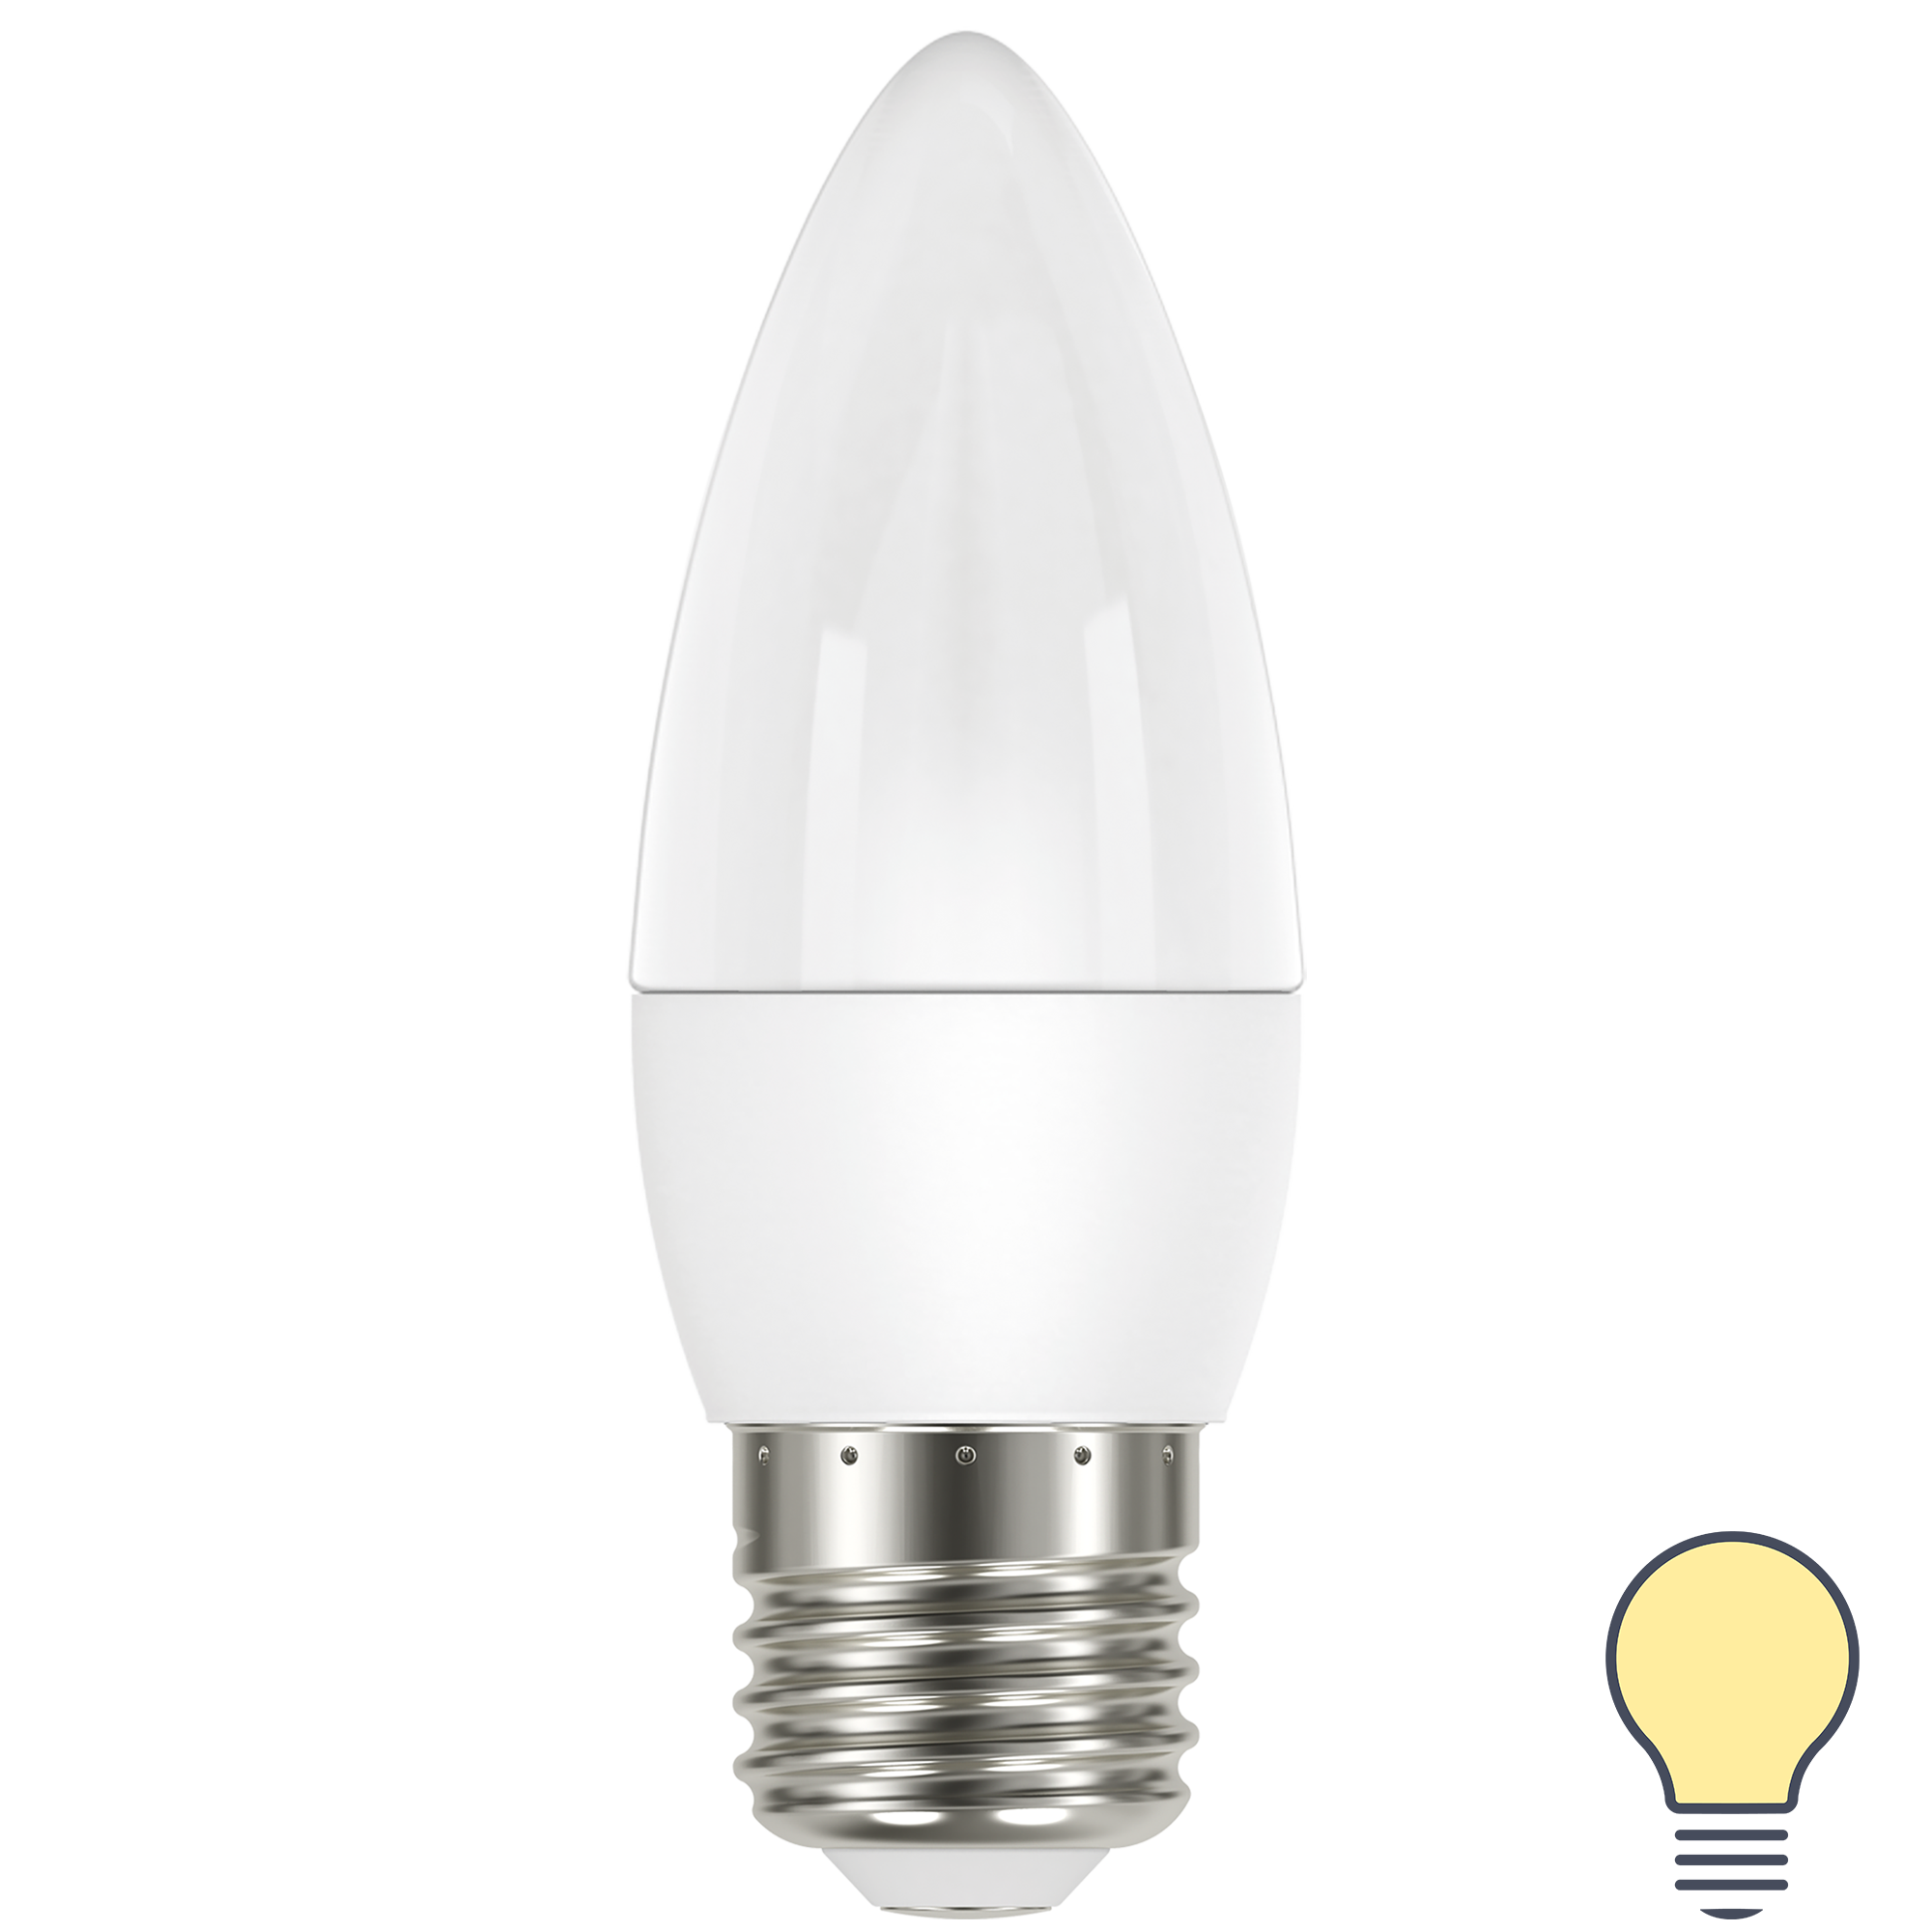 82991541 Лампа светодиодная Candle E27 175-250 В 6.5 Вт белая 600 лм теплый белый свет STLM-0038556 LEXMAN